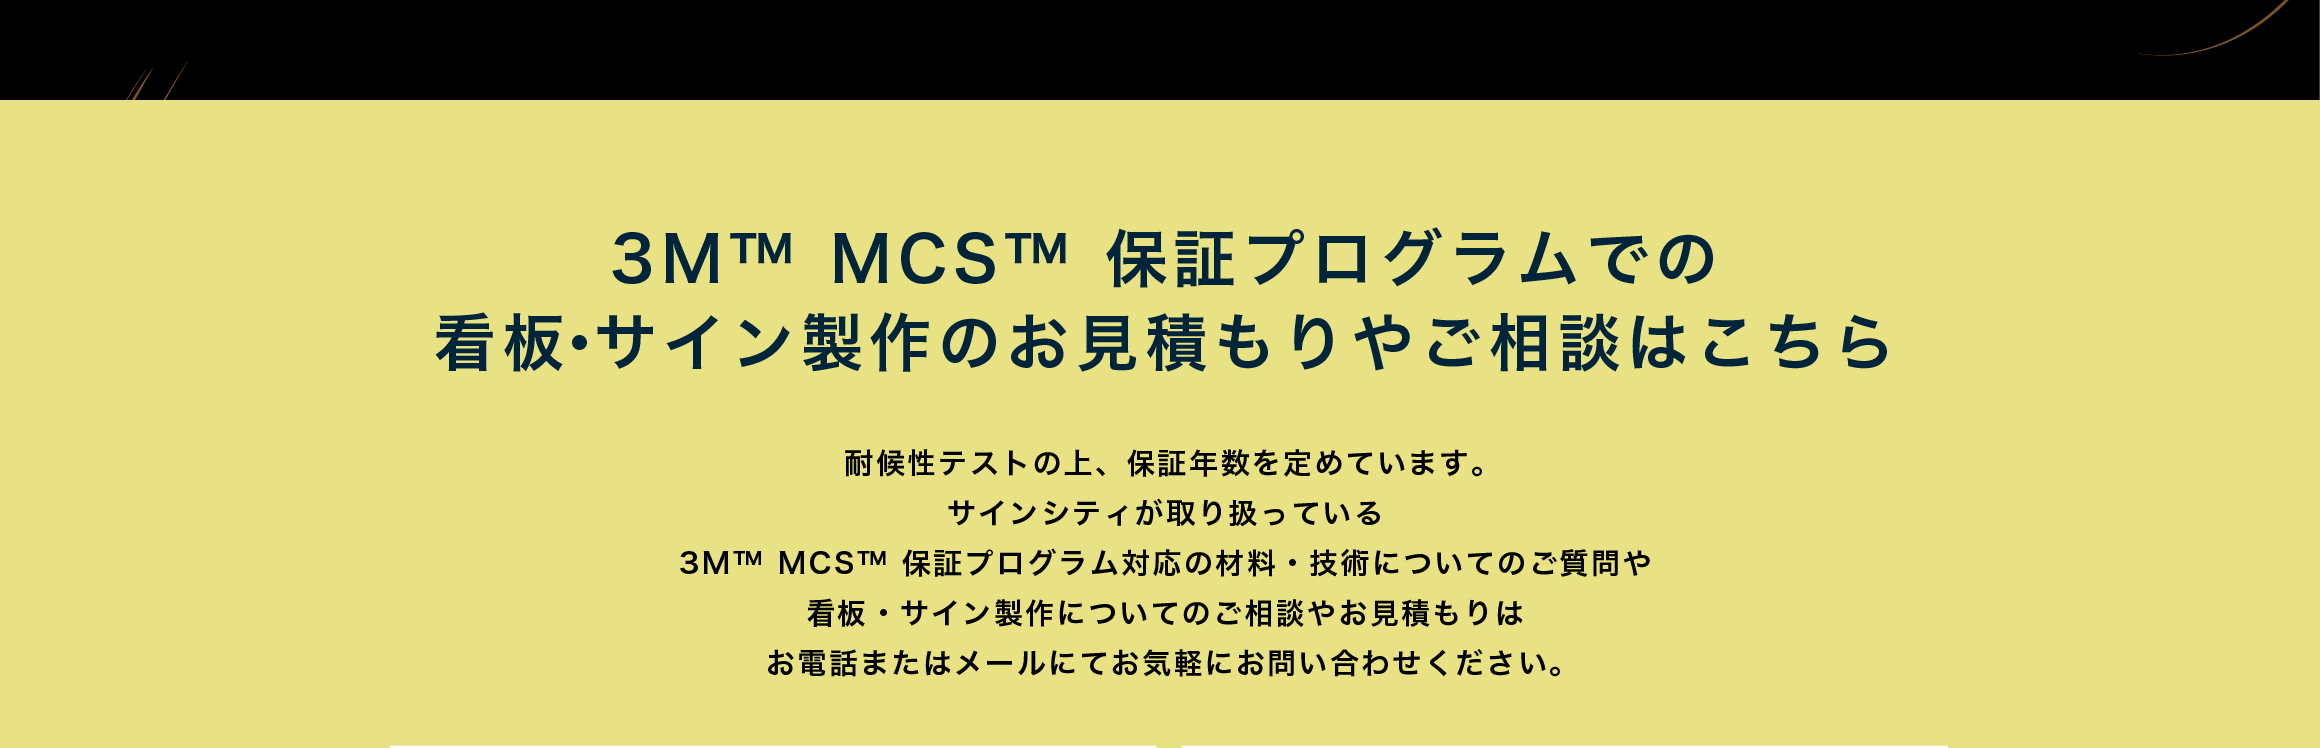 3M™ MCS™ 保証プログラムでの看板・サイン製作のお見積もりやご相談はこちら